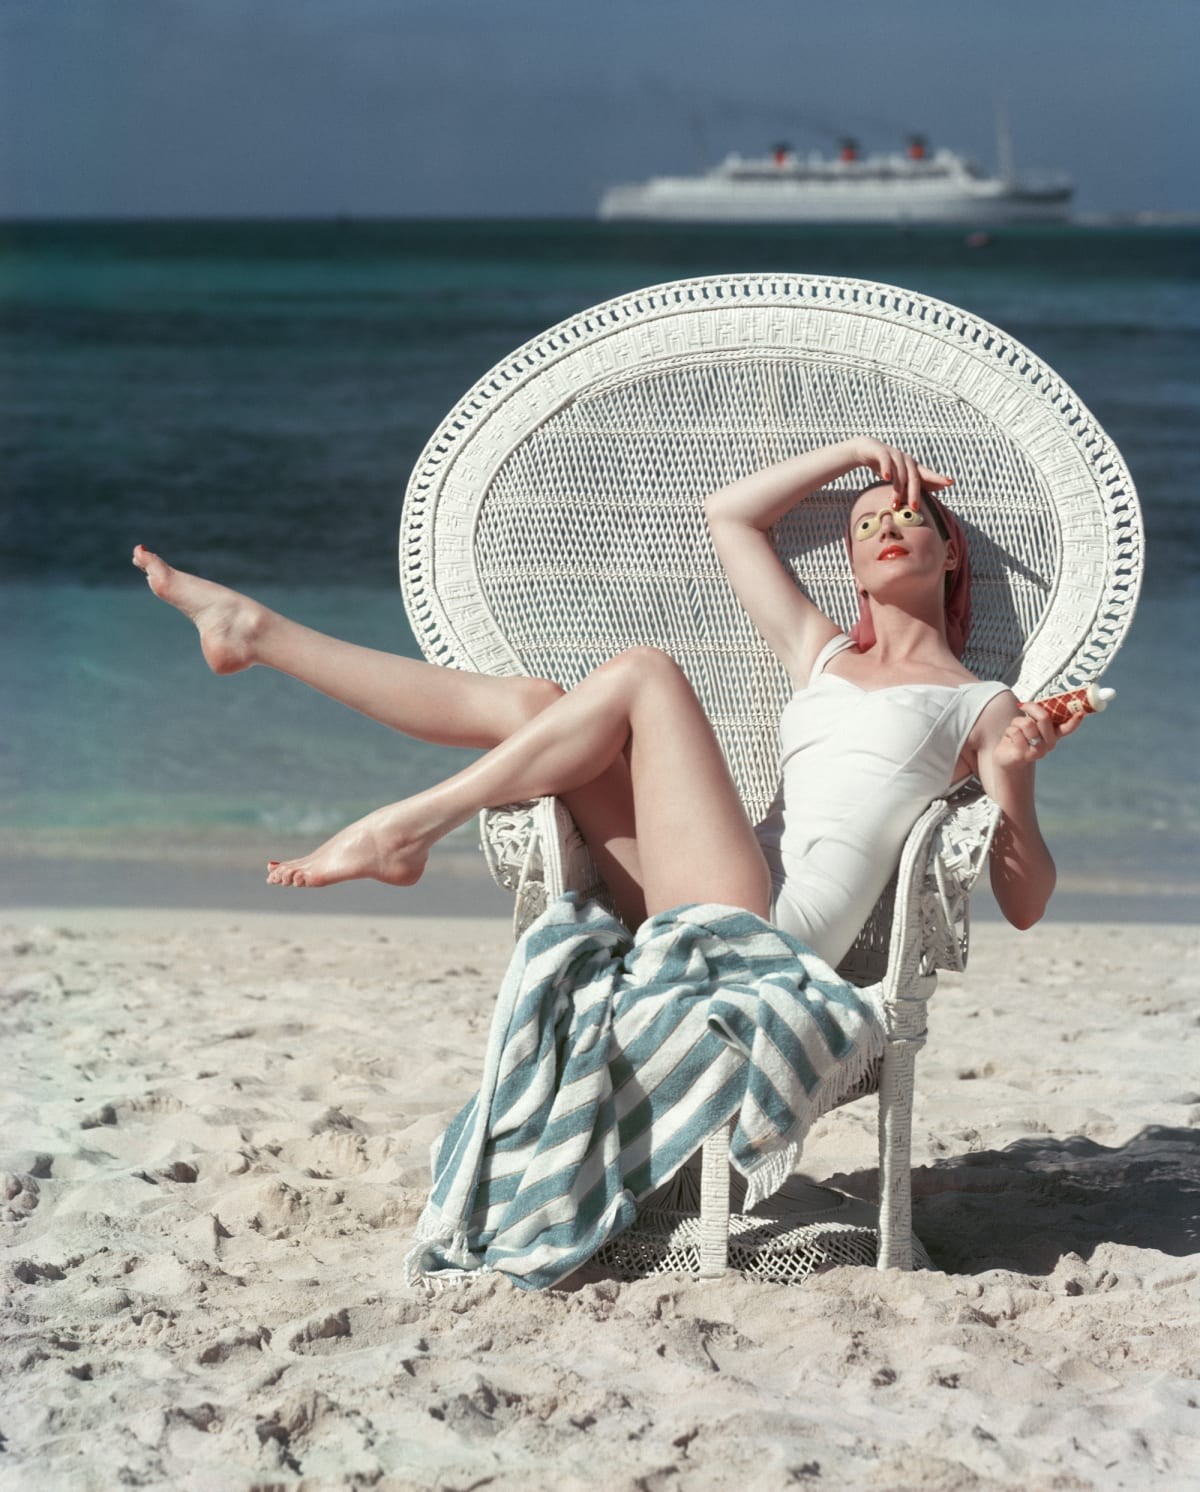 Пляж, ок. 1950. Фотограф Марк Шоу